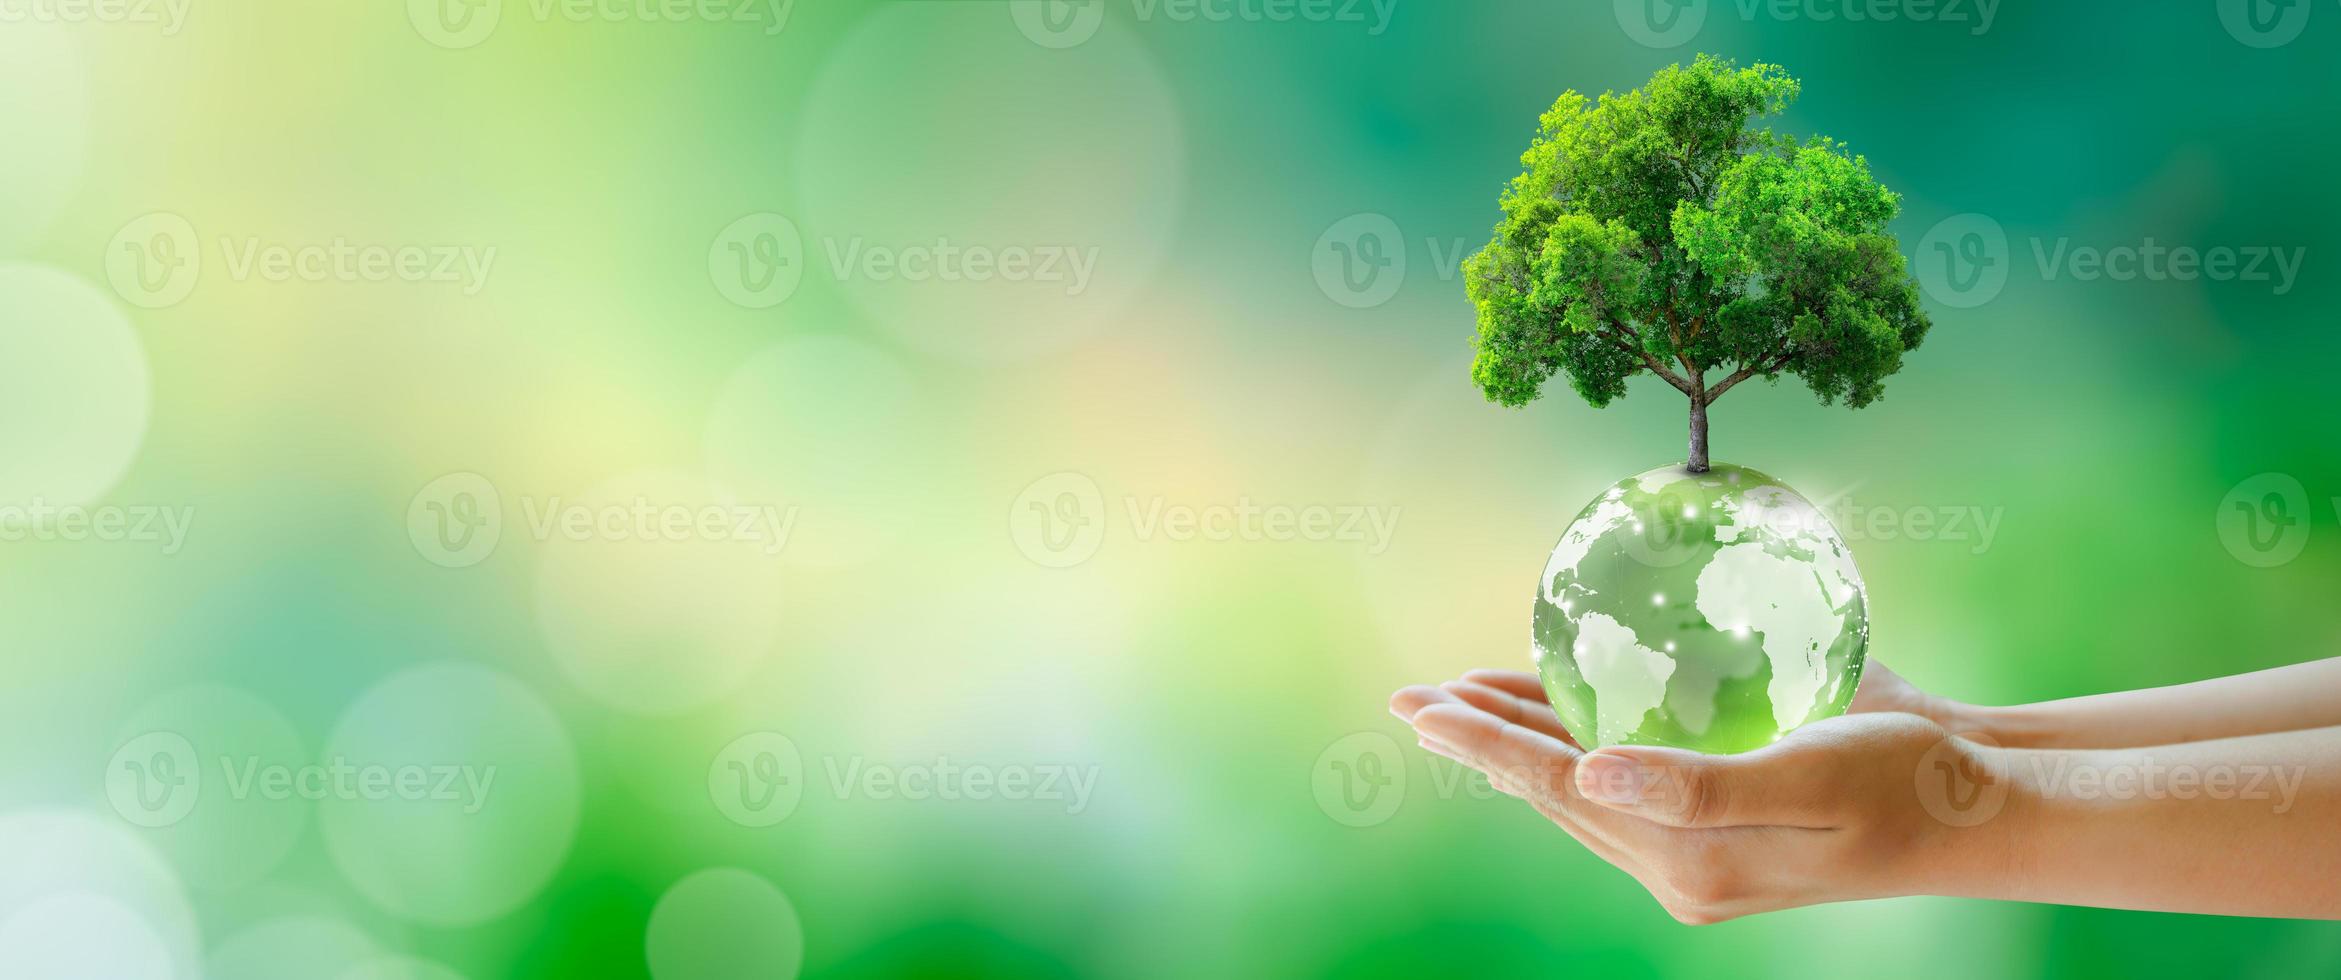 Weltpsychische Gesundheit und Welttag der Erde. umwelt- und ökologiekonzept sparen. foto